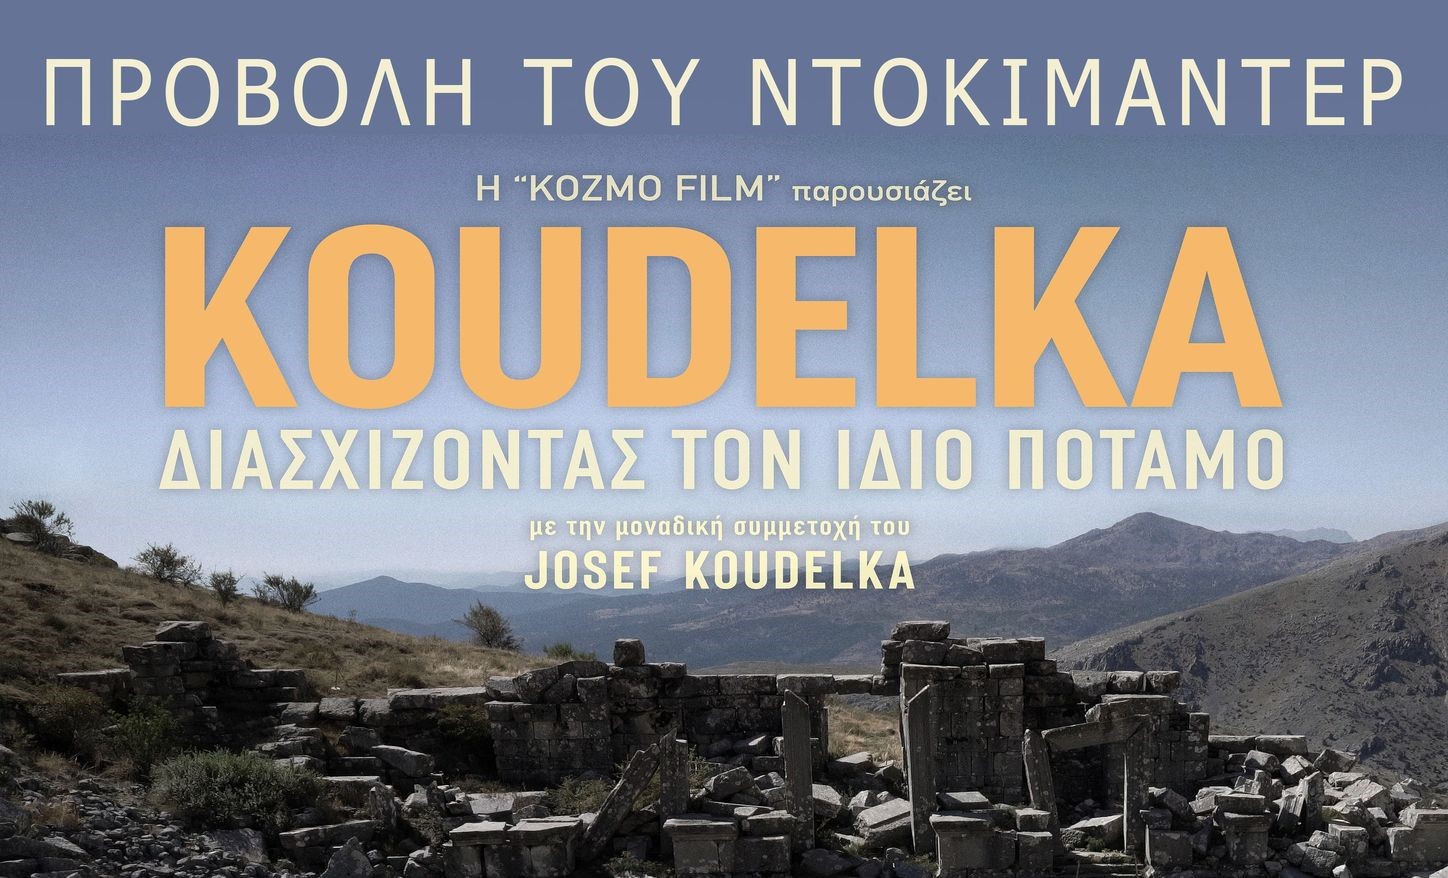 ” Koudelka – Διασχίζοντας τον ίδιο ποταμό” φωτογραφικό ντοκιμαντέρ στη ΦΕΜ